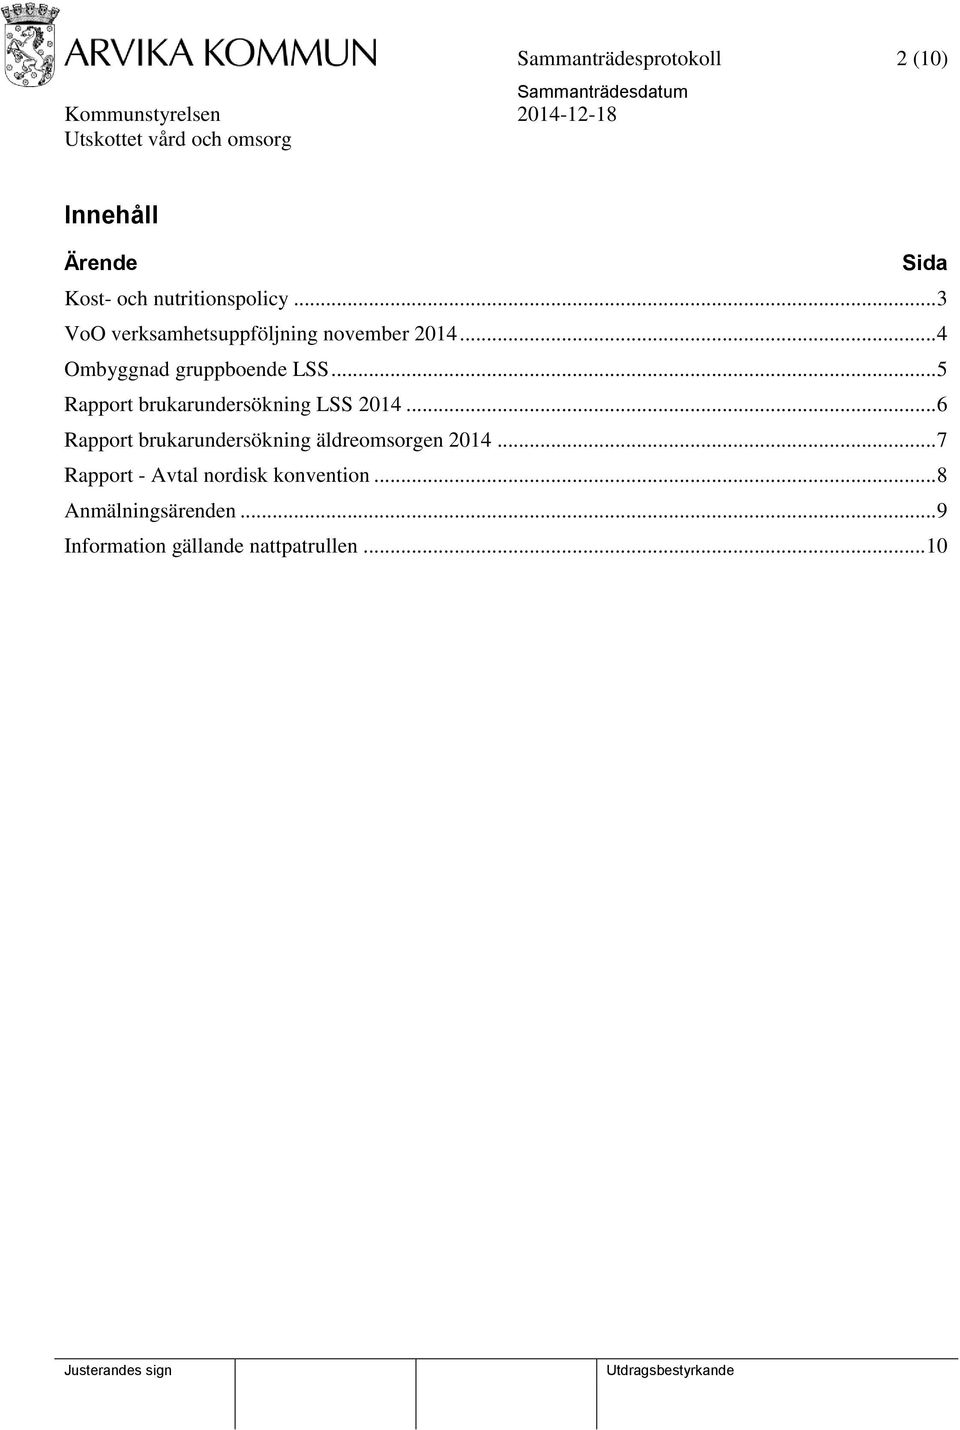 .. 5 Rapport brukarundersökning LSS 2014.